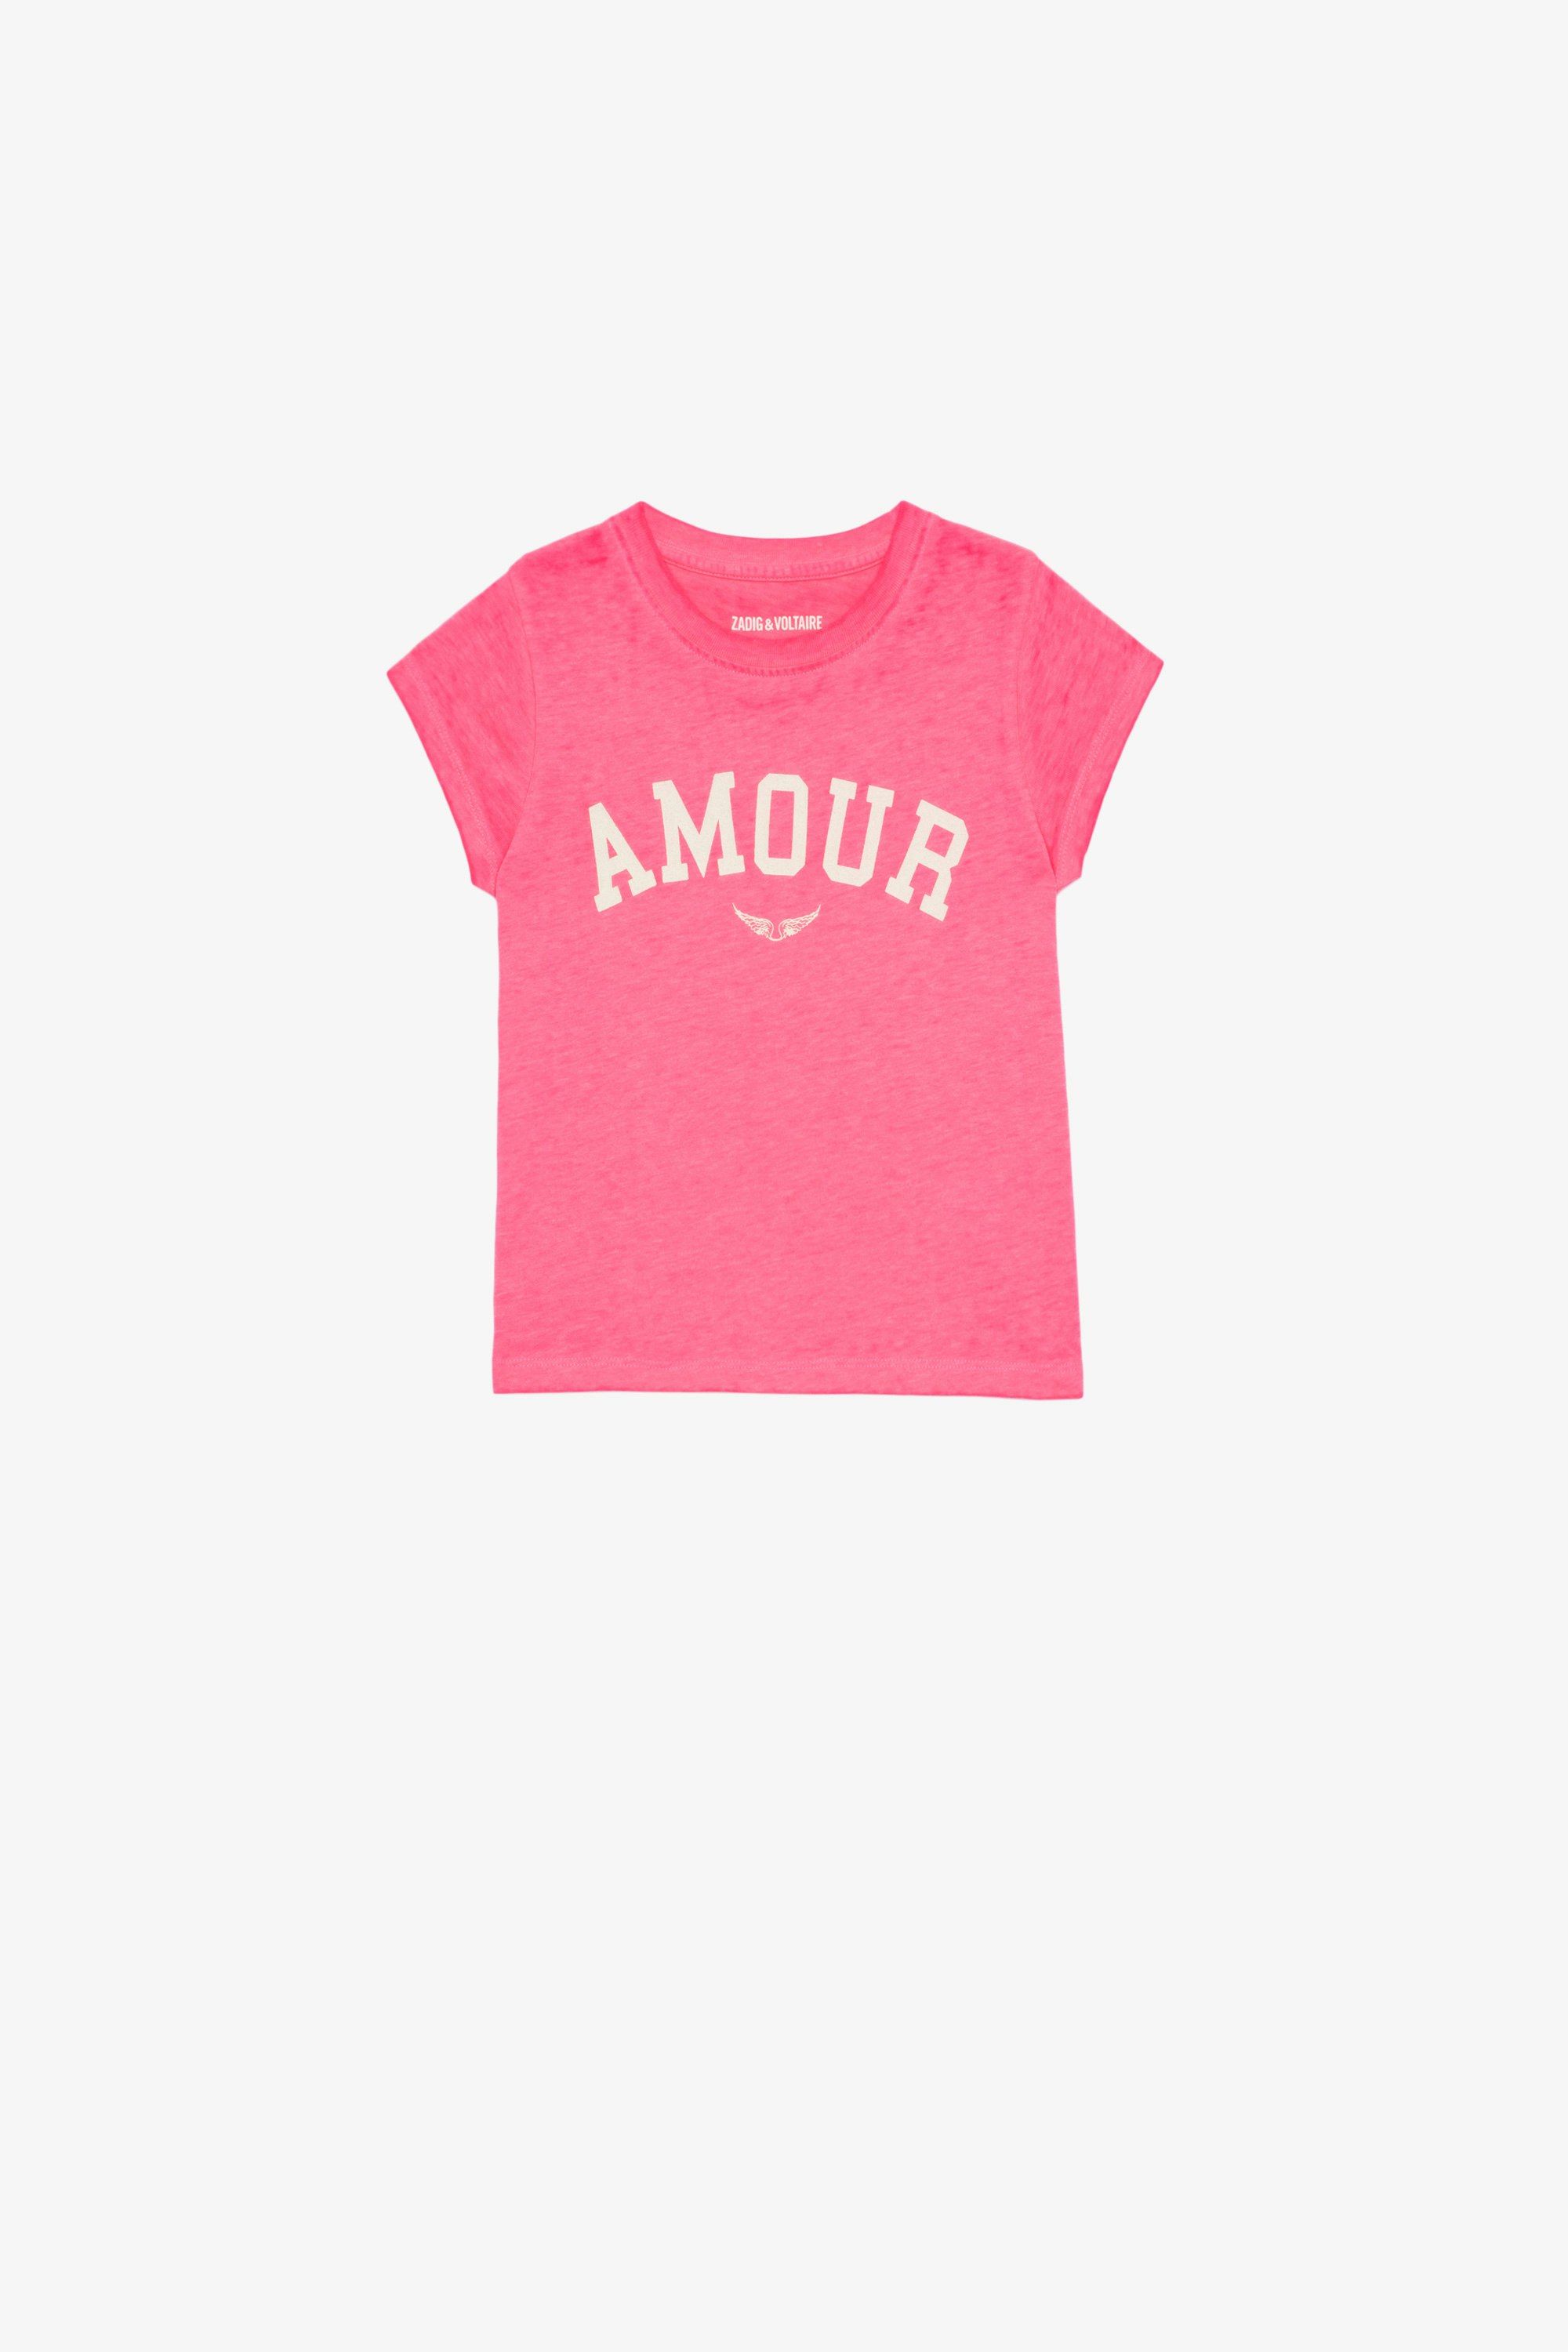 T-shirt Niels Enfant T-shirt en jersey coton rose orné d'un imprimé Amour enfant